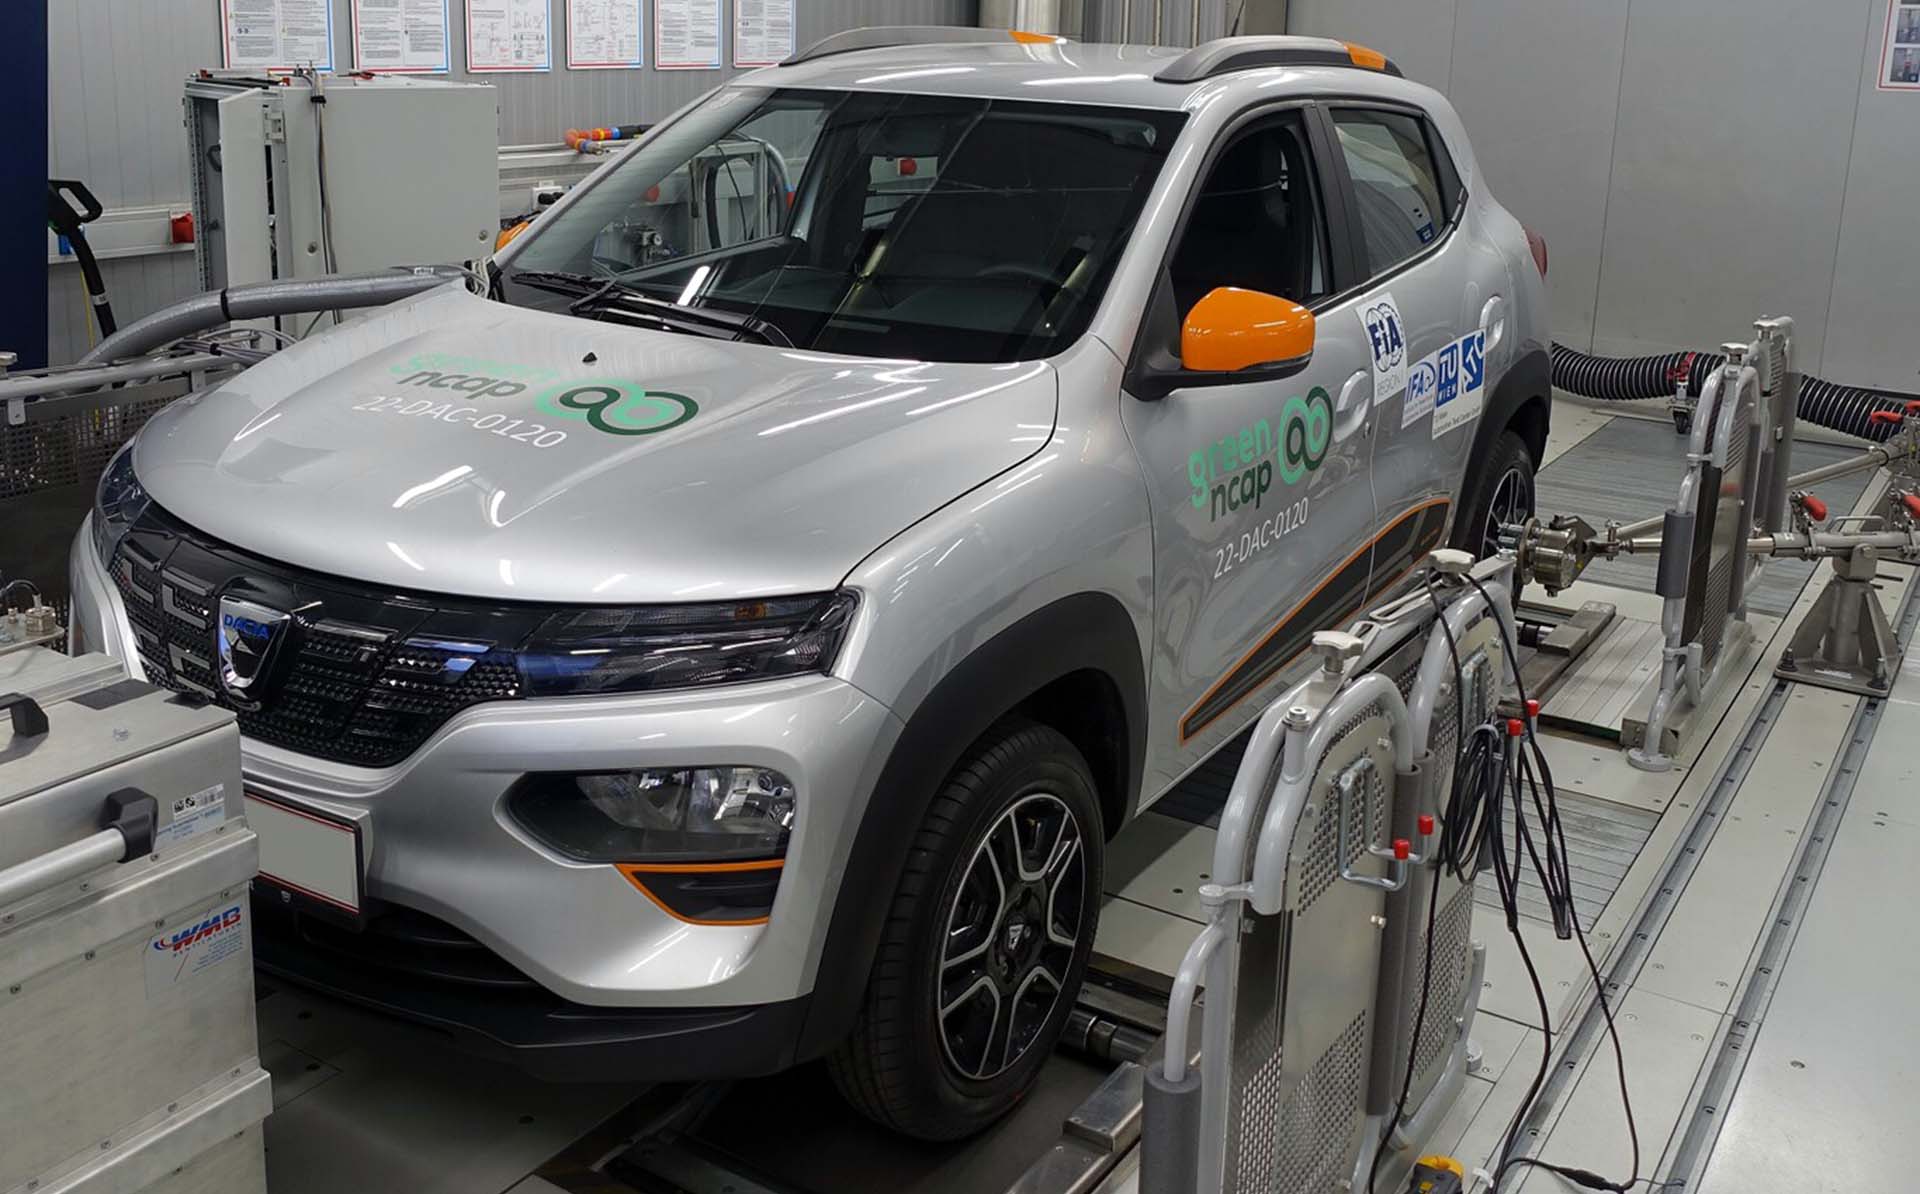 El Dacia Spring EV es 100% eléctrico, asequible y eficiente. Se llevó 5 estrellas Green NCAP en agosto 2022